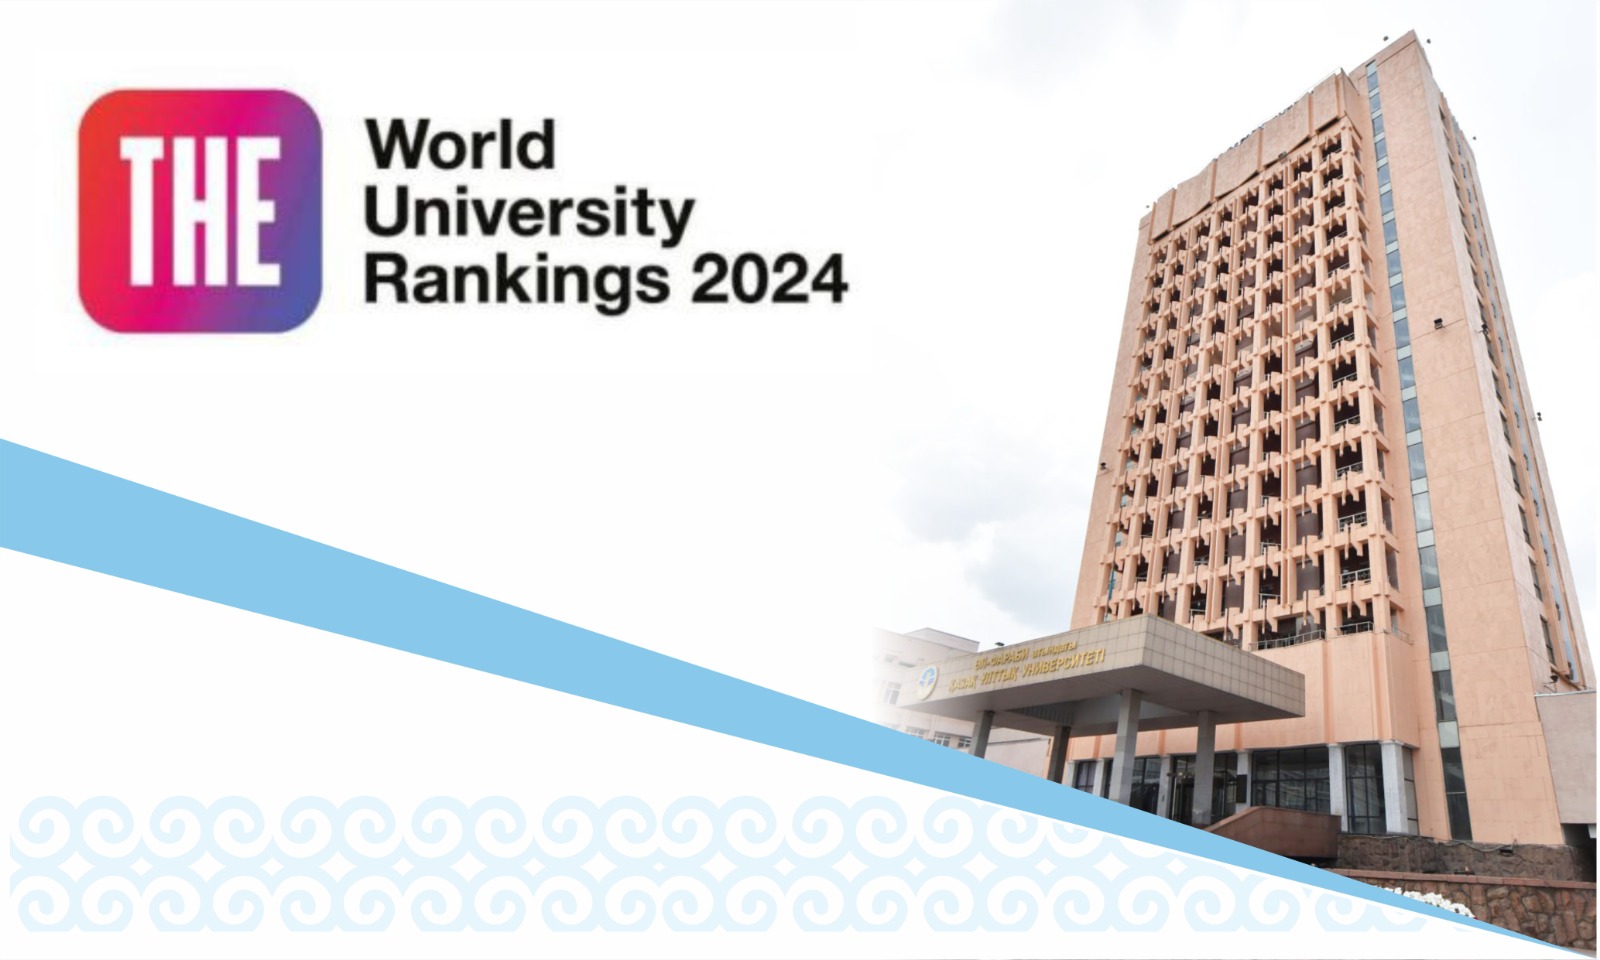 КазНУ улучшил показатели в рейтинге Times Higher Education World University Rankings - 2024